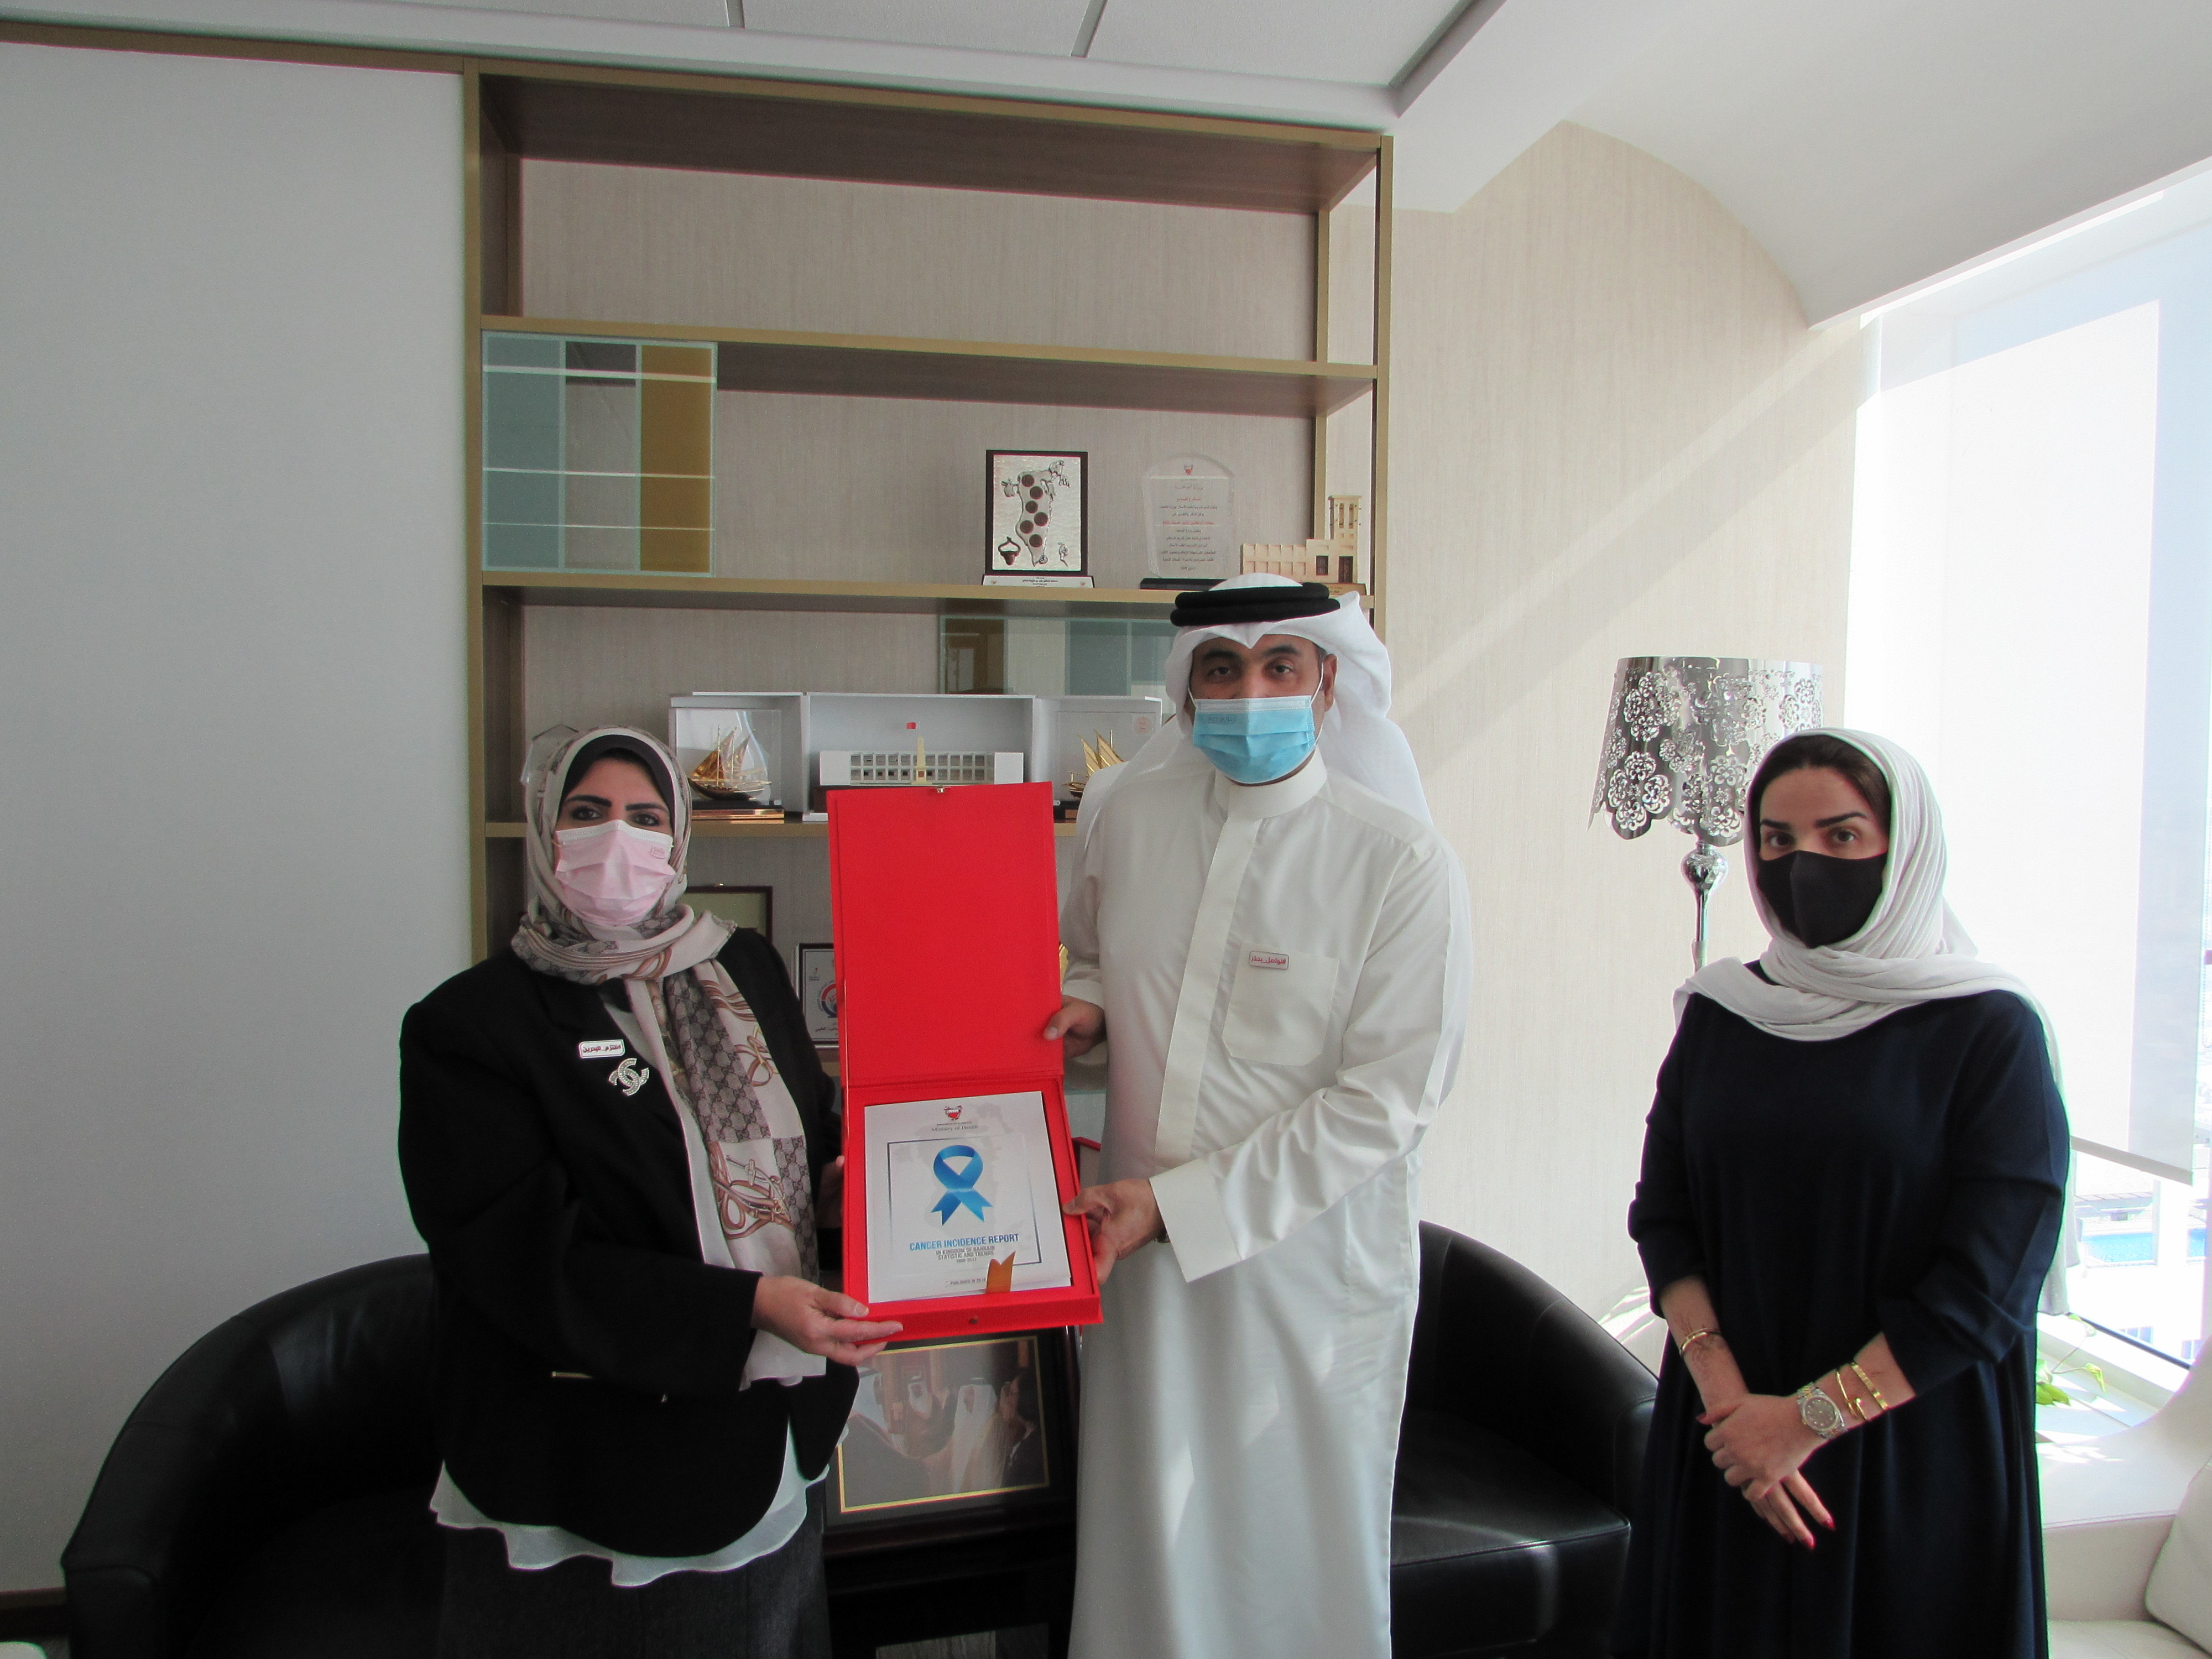 وكيل الصحة يتسلم نسخة من  التقرير المعد من جانب مكتب المراجعة الطبية حول معدلات الإصابة بالسرطان في مملكة البحرين